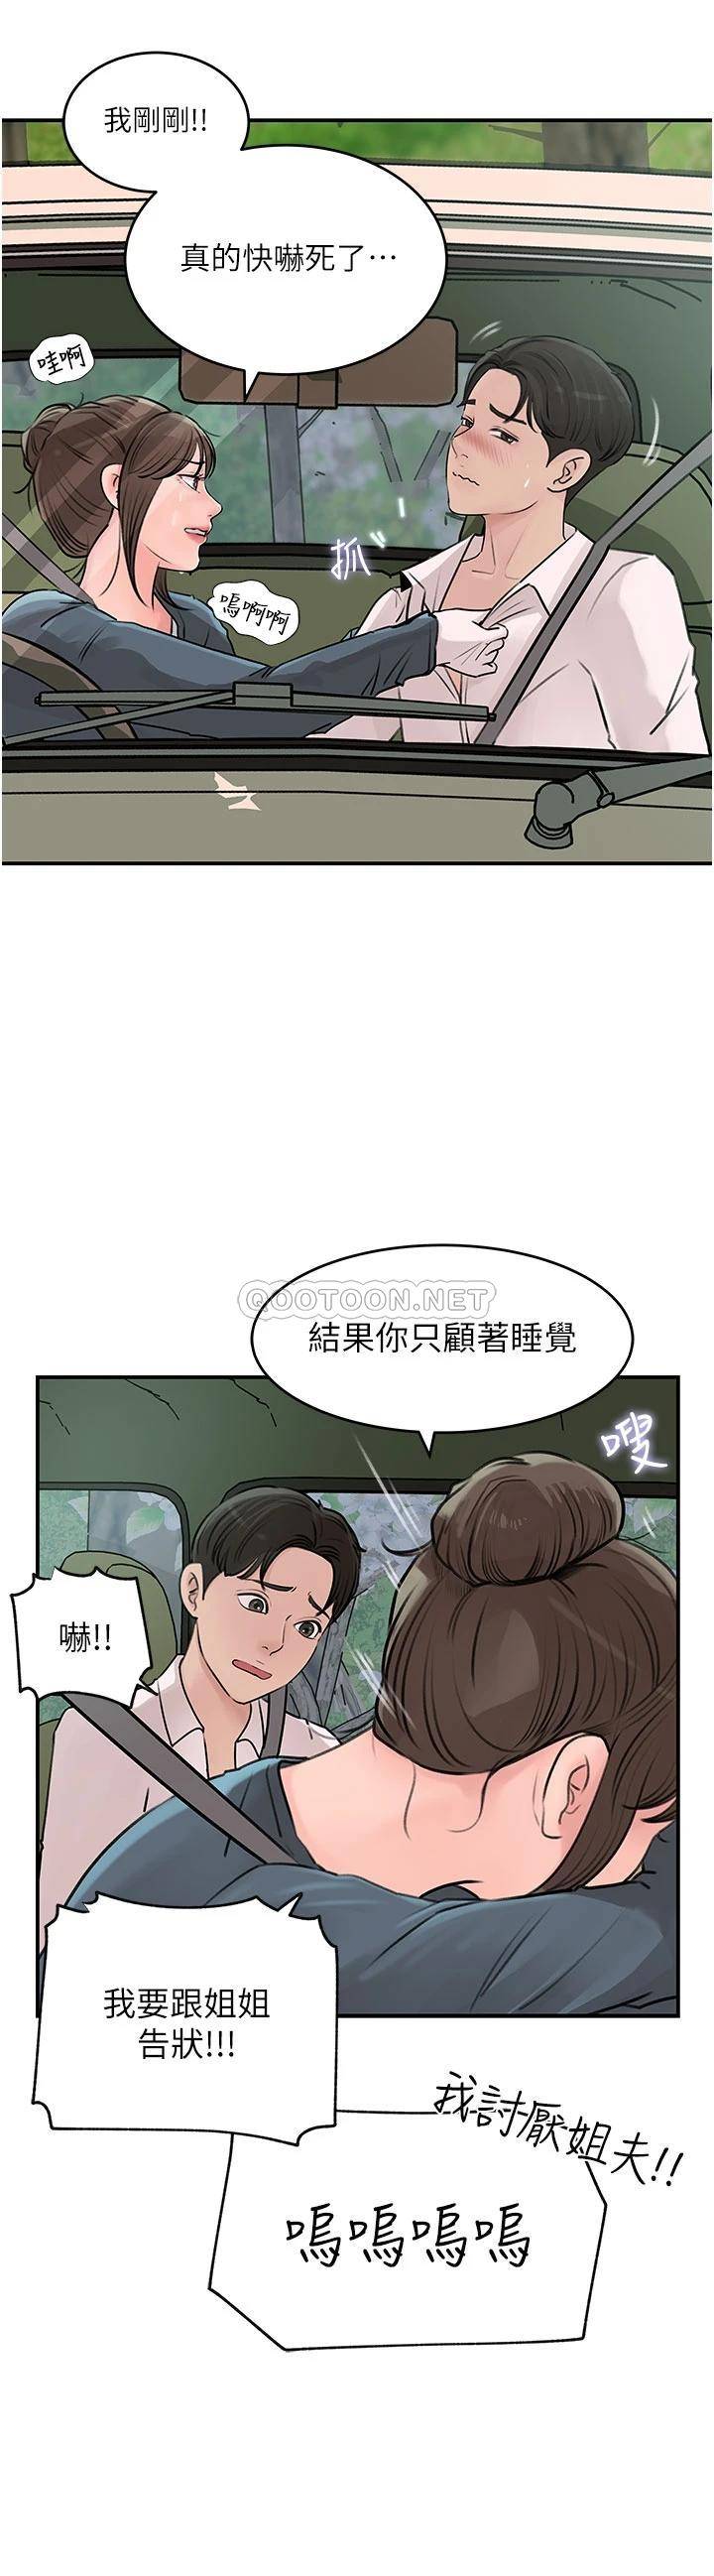 韩国污漫画 深入小姨子 第18话 难以压抑的欲望 42